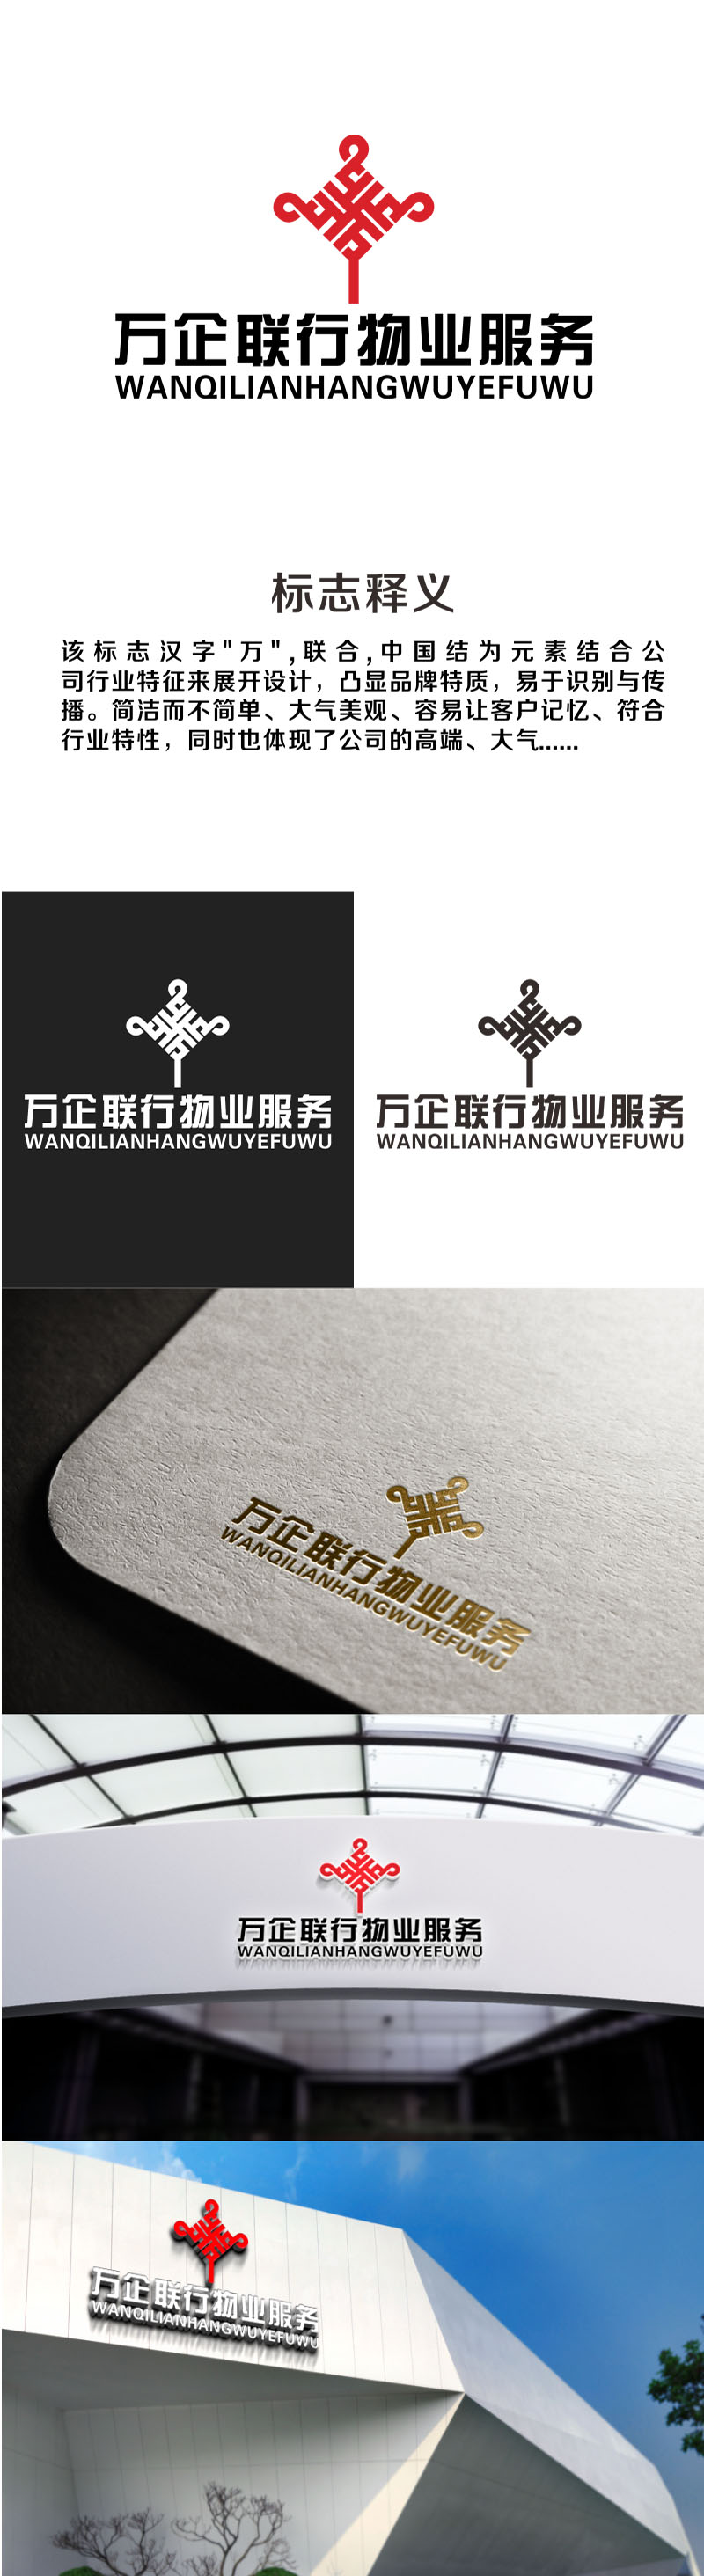 郭重阳的万企联行物业服务有限公司logo设计